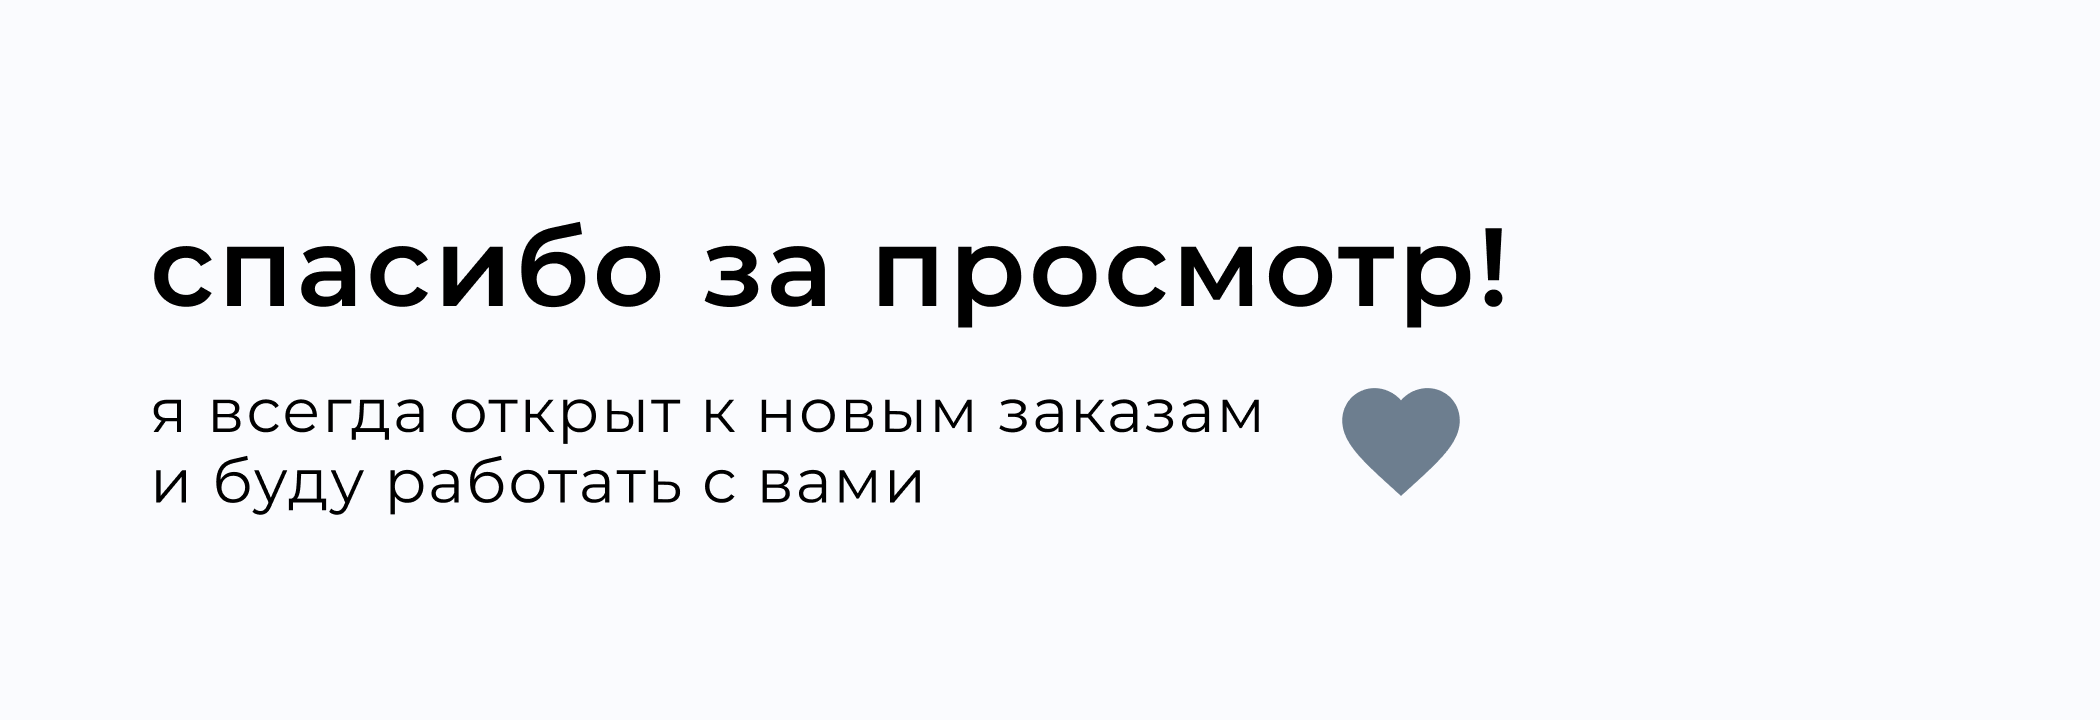 Байкальская резиденция | Редизайн сайта отеля — Изображение №9 — Интерфейсы, Анимация на Dprofile